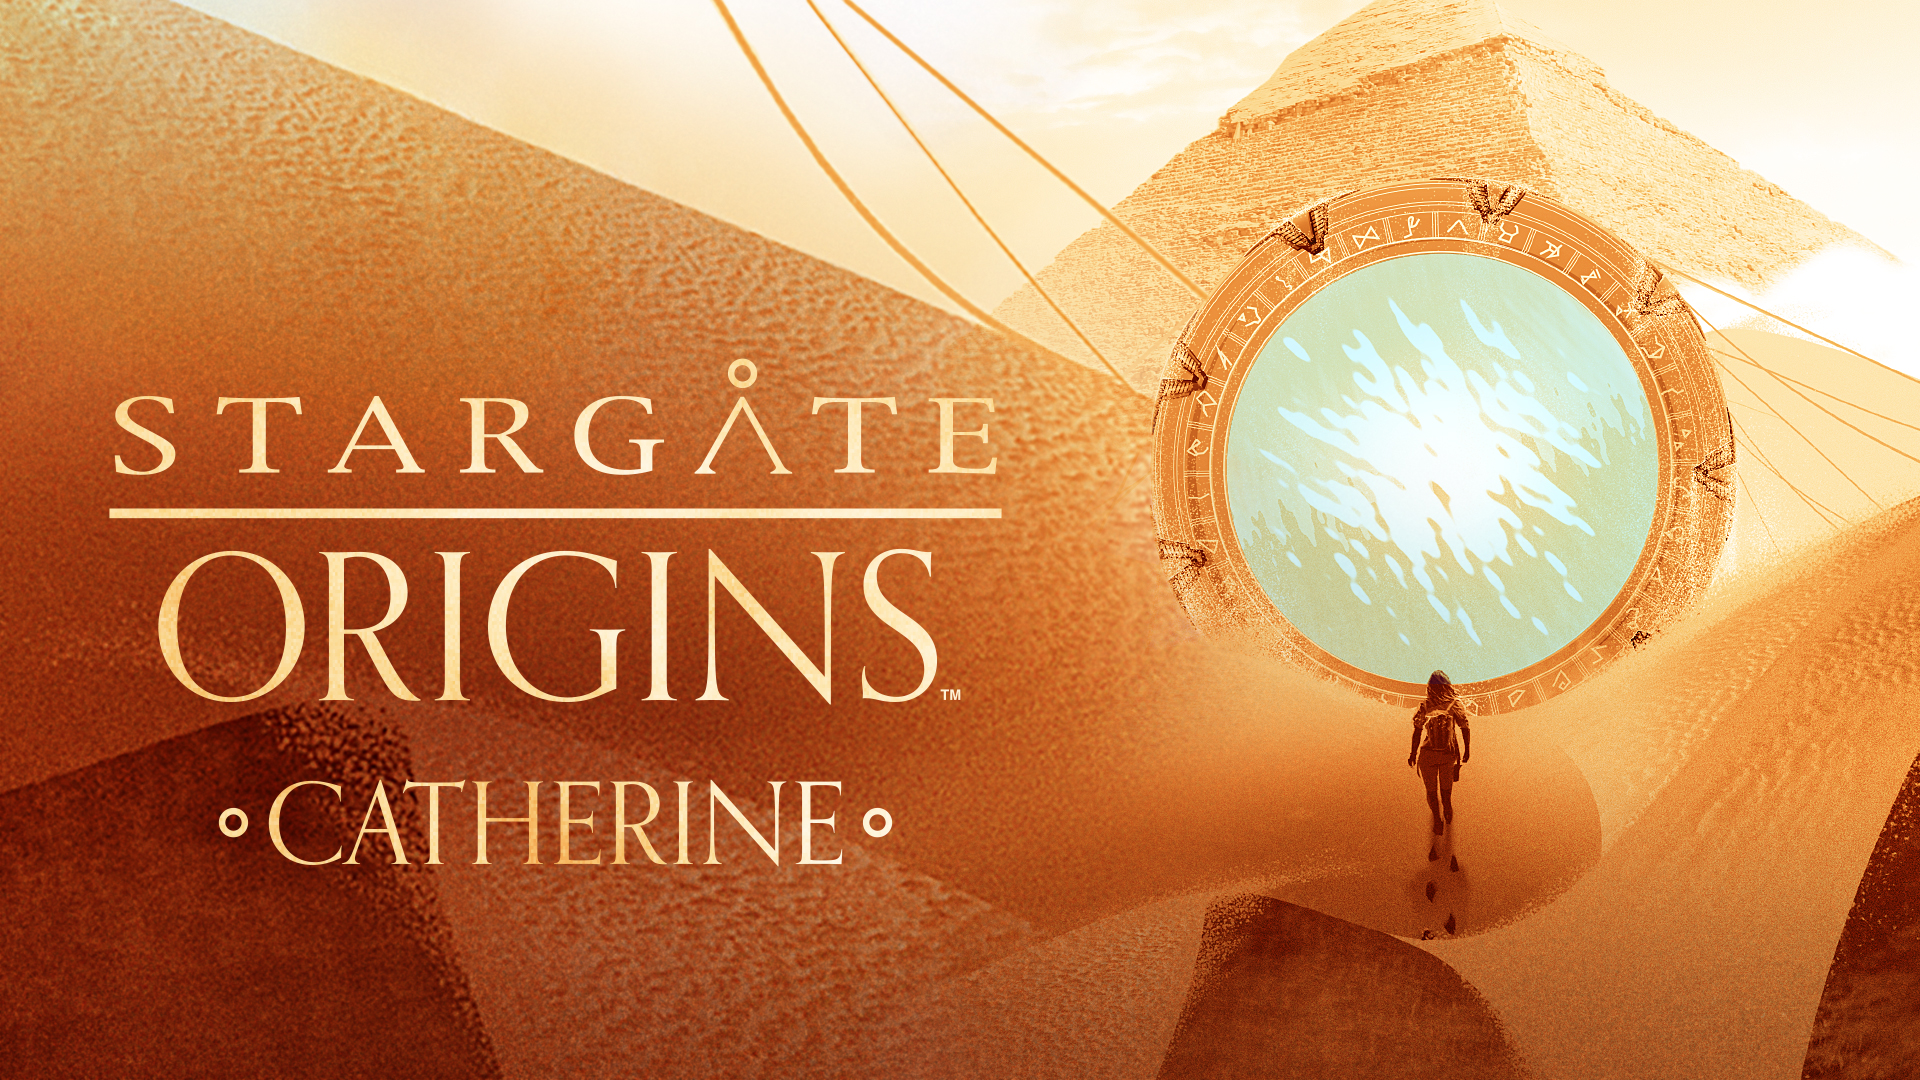 Télécharger des fonds d'écran Stargate Origins: Catherine HD